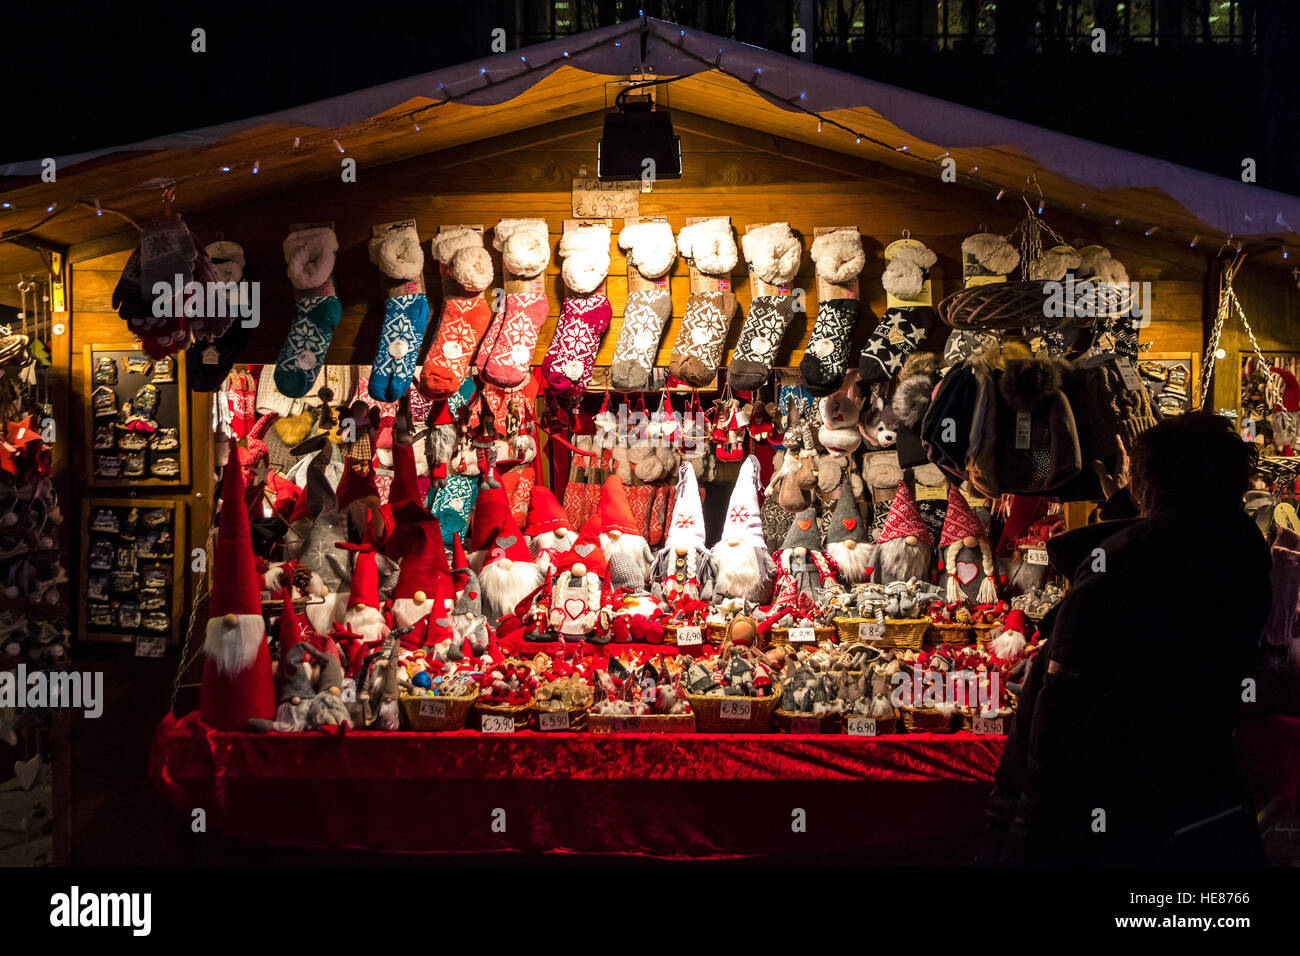 Avec les kiosques de la nourriture locale et des cadeaux en annuelles traditionnelles de Noël sur la place Cavour dans le centre de la vieille ville de Côme, Italie Banque D'Images